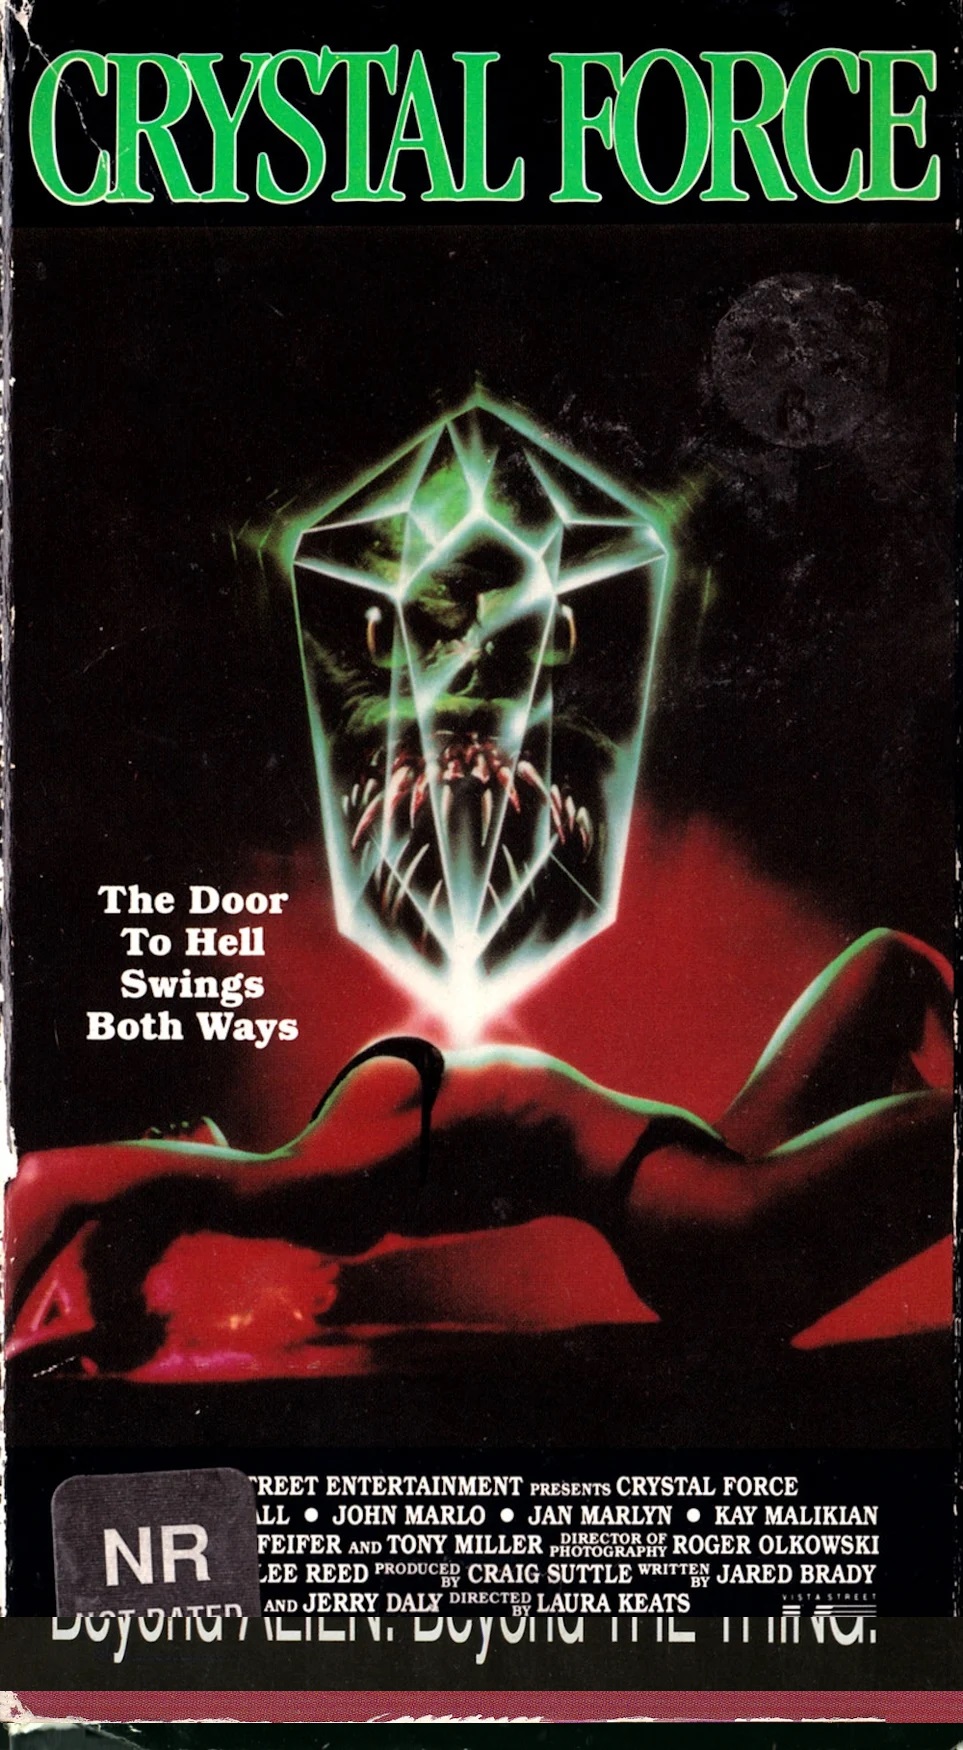 Preços baixos em Filme de Terror, Fantasma (1990) Filme/TV Título PG-13  Fitas VHS Nominal